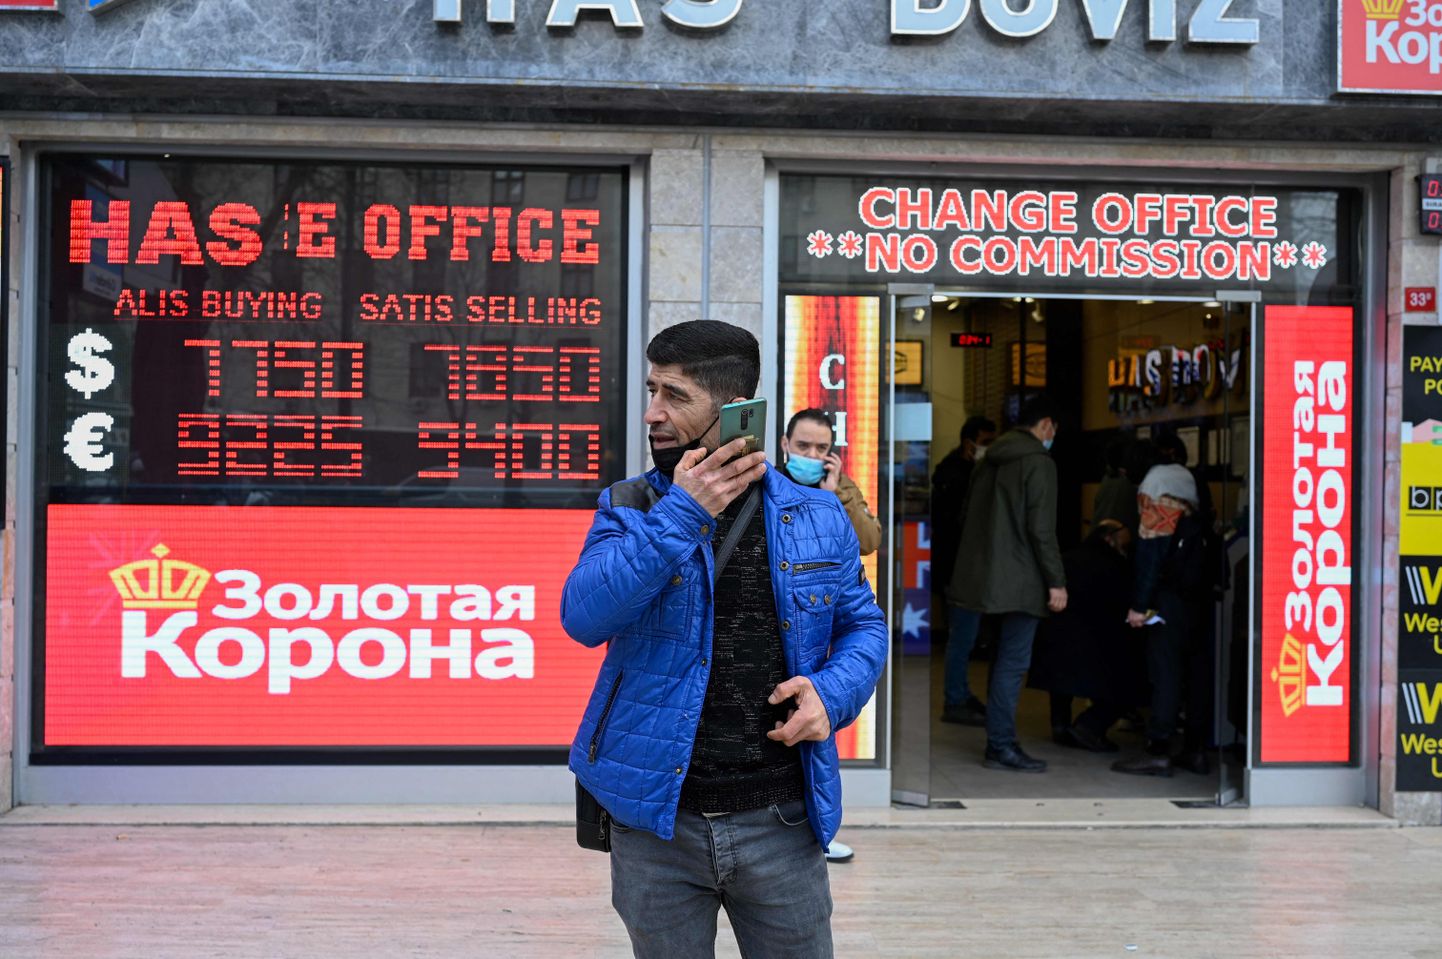 Valuutavahetusputka Istanbulis